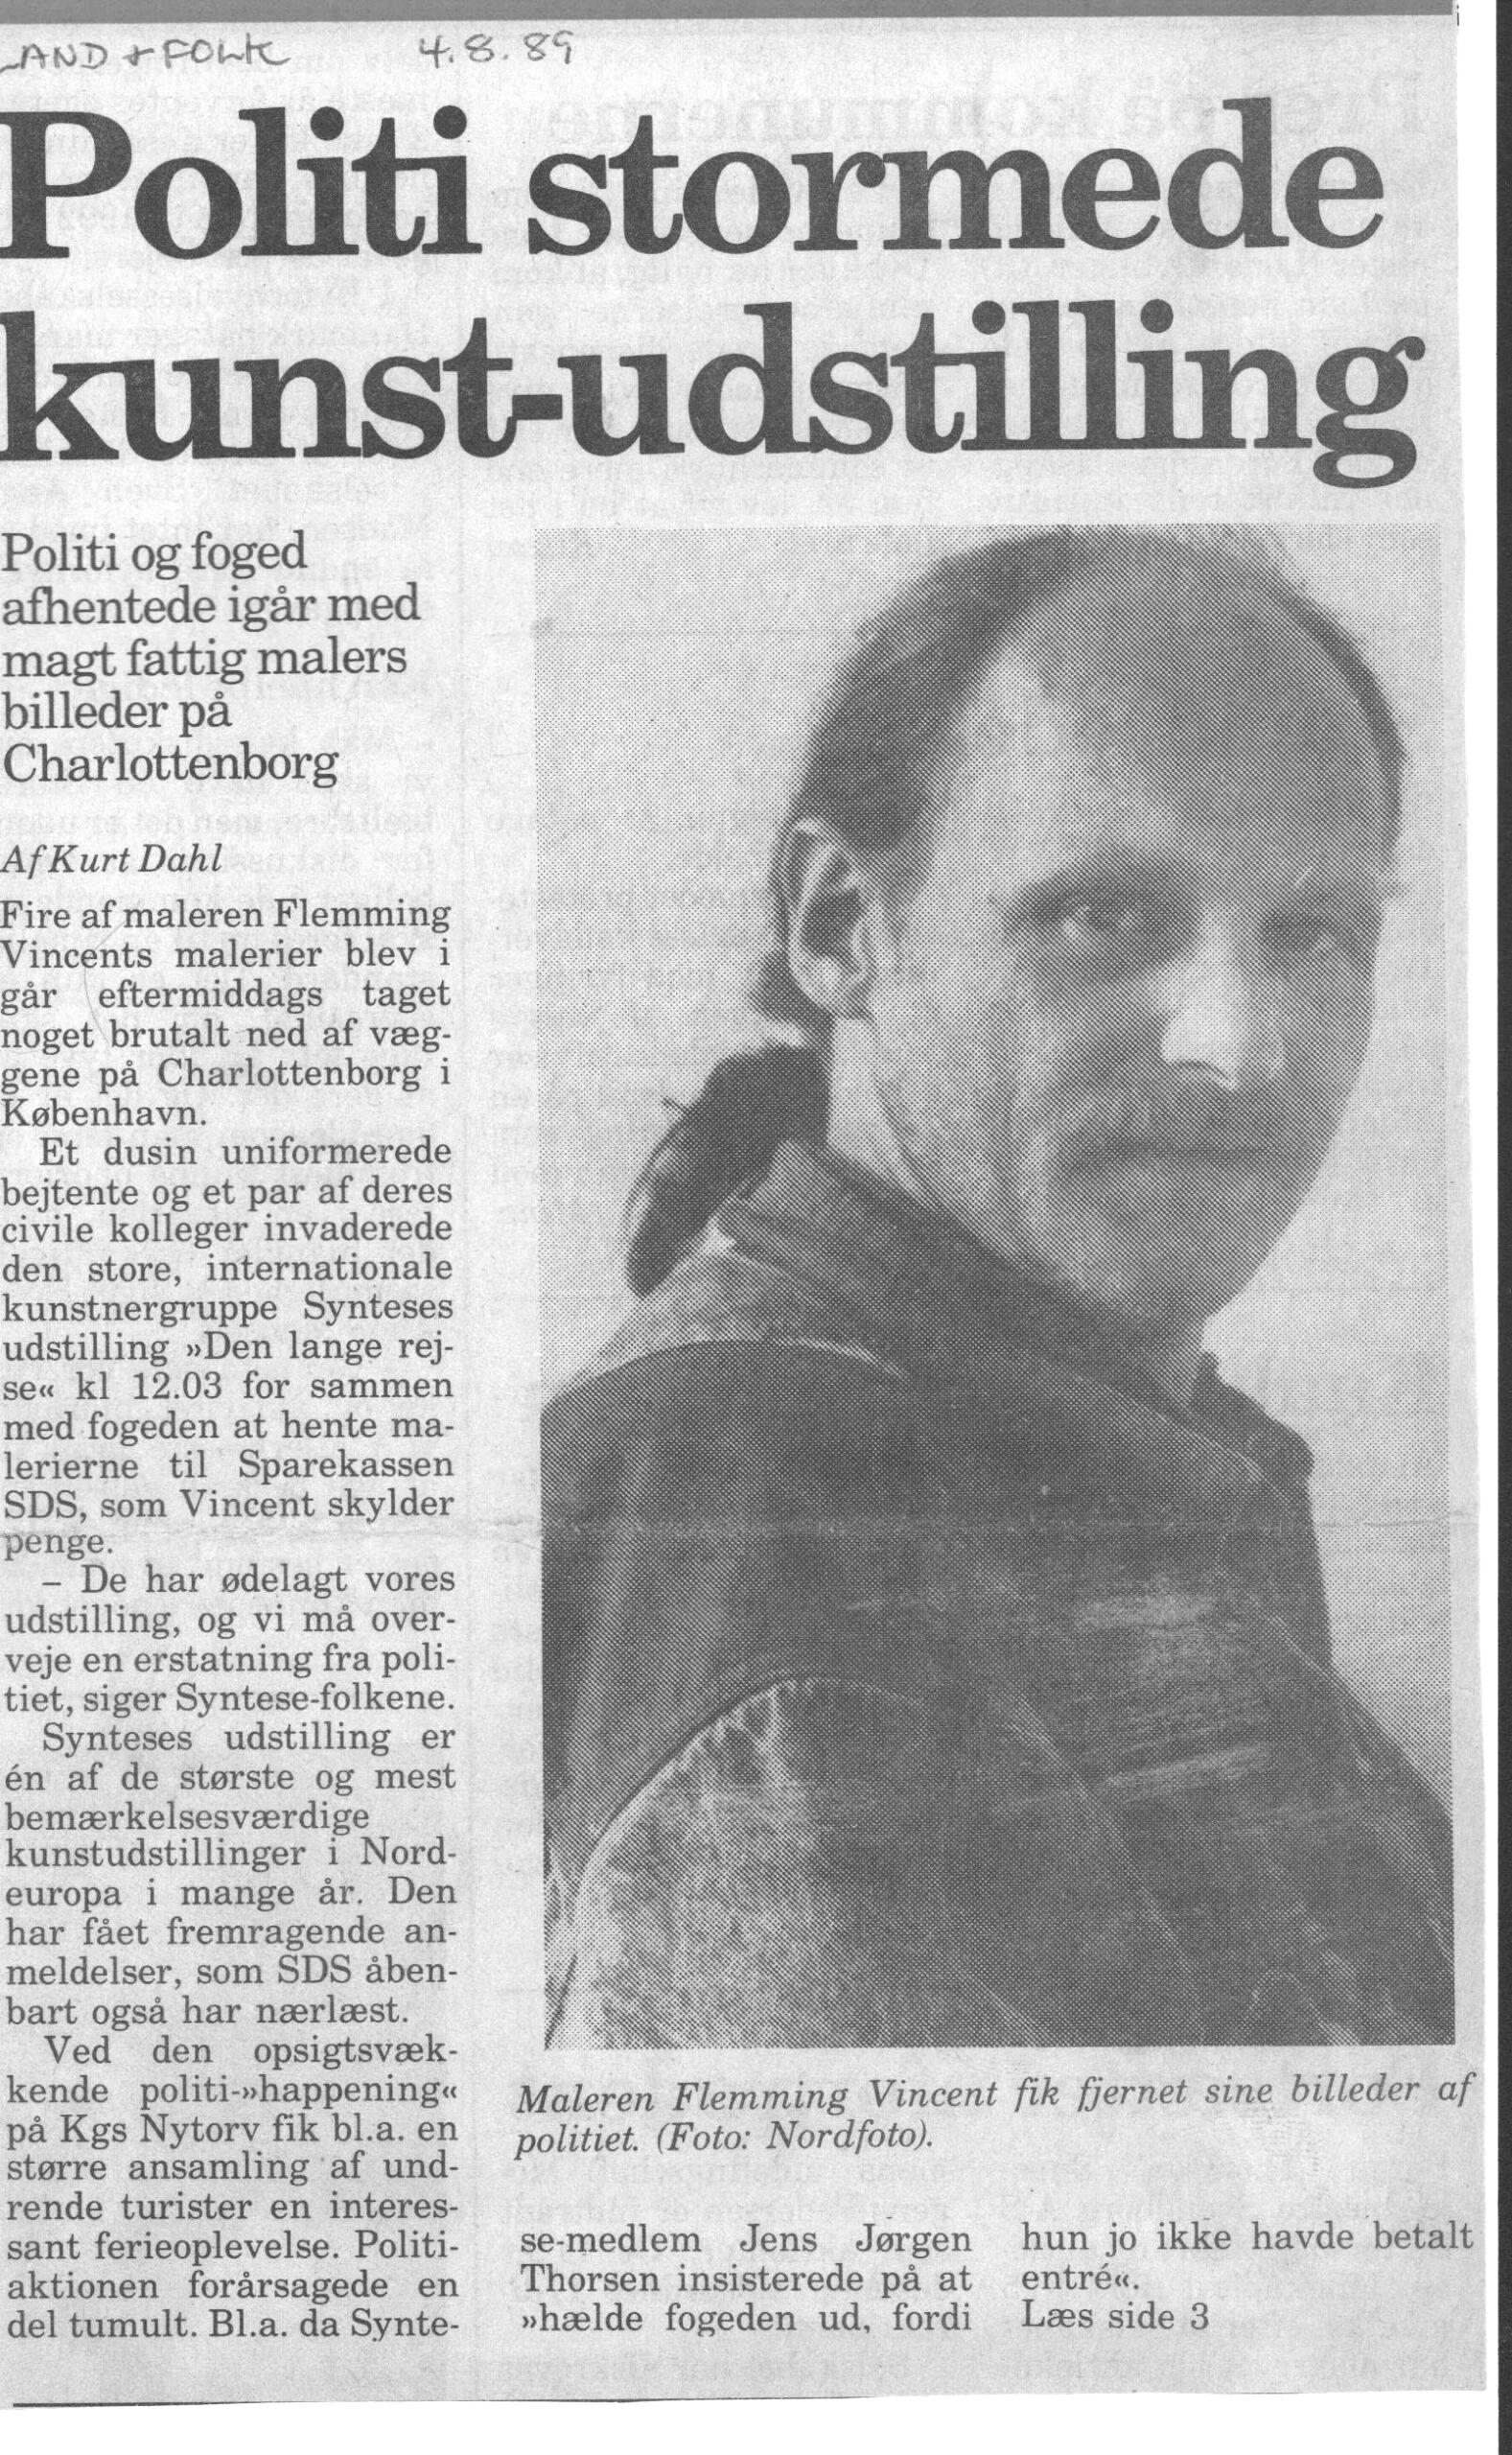 Politi stormede kunst-udstilling. Omtale (Retsag. Den lange rejse. Charlottenborg 1989, København). Kurt Dahl. Land og Folk.